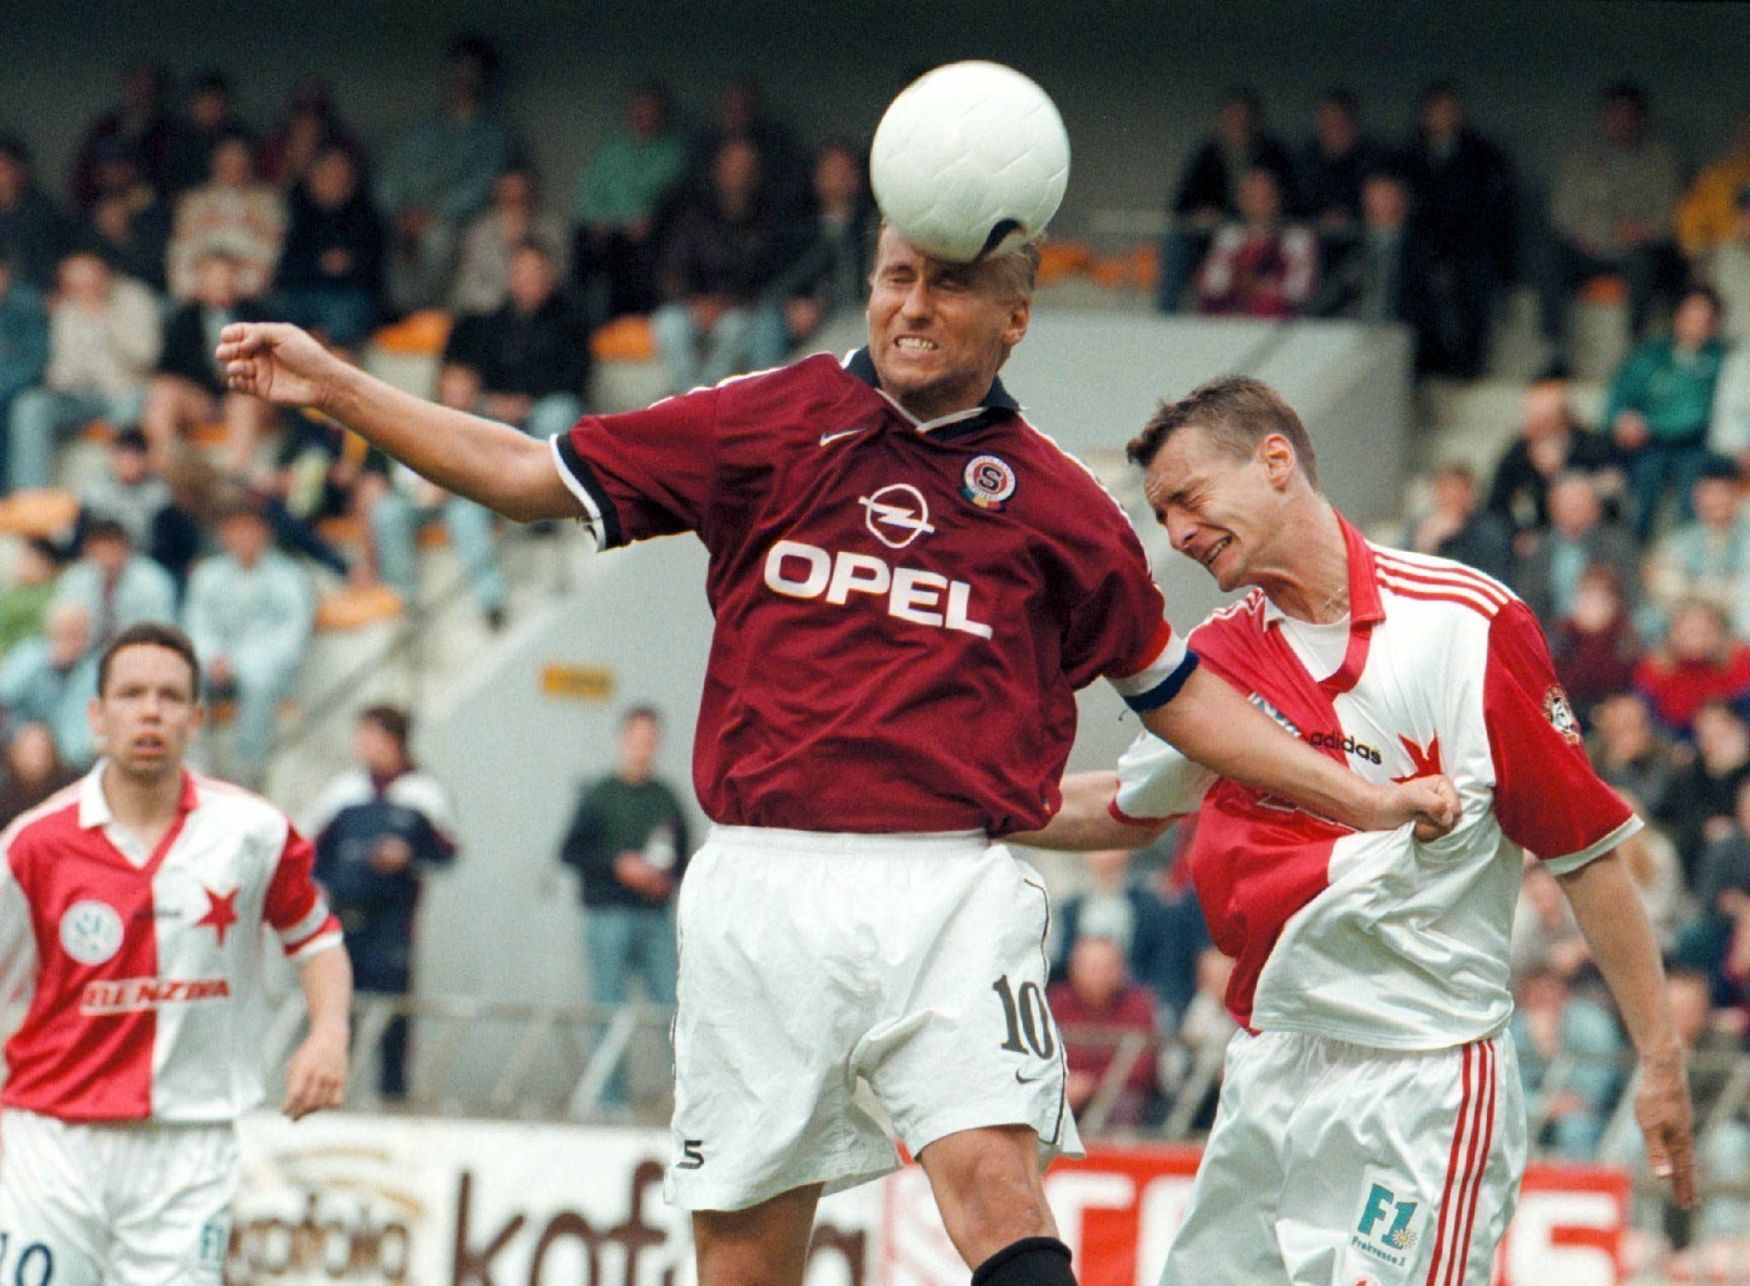 Derby 1999: Siegl a Labant